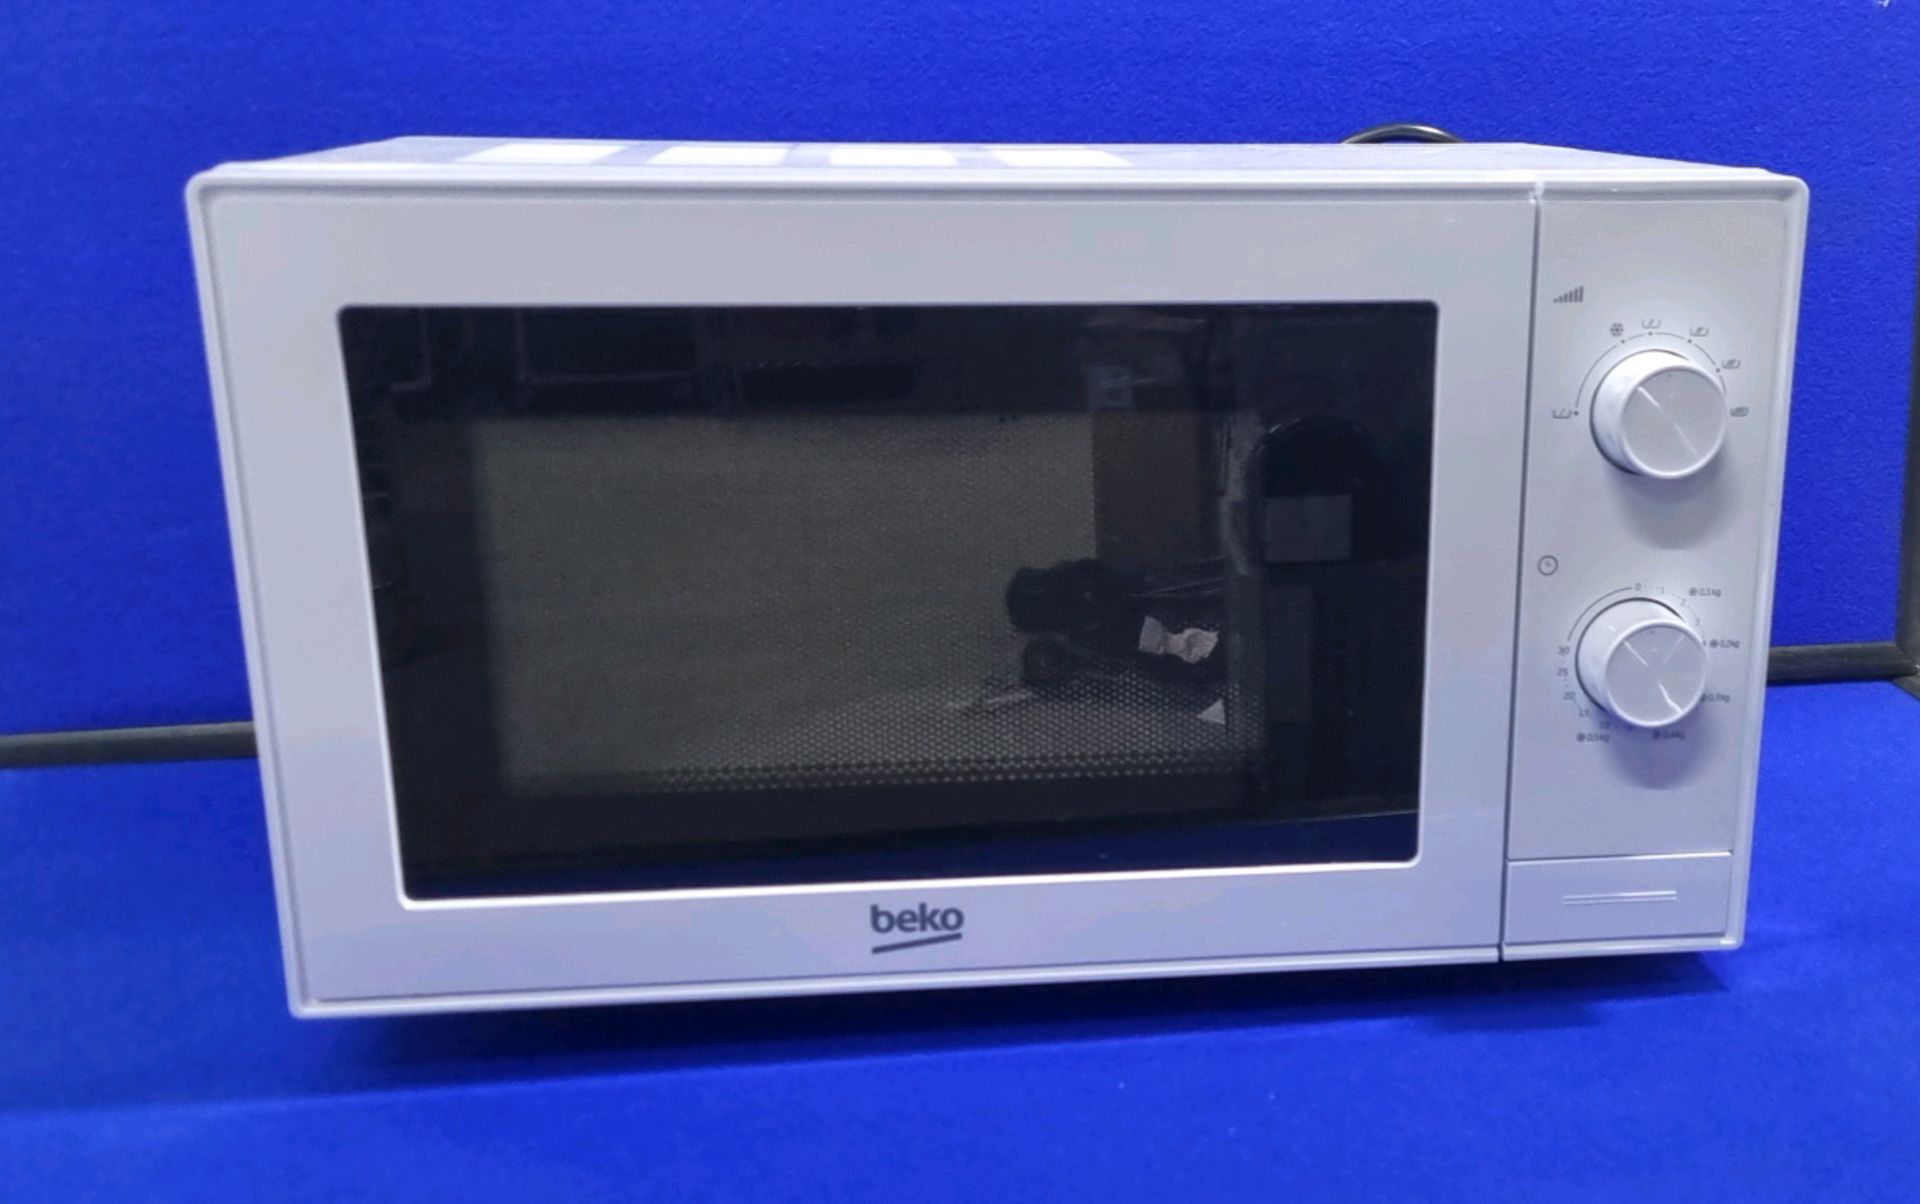 Beko Microwave Oven MOC20100 700 Watt